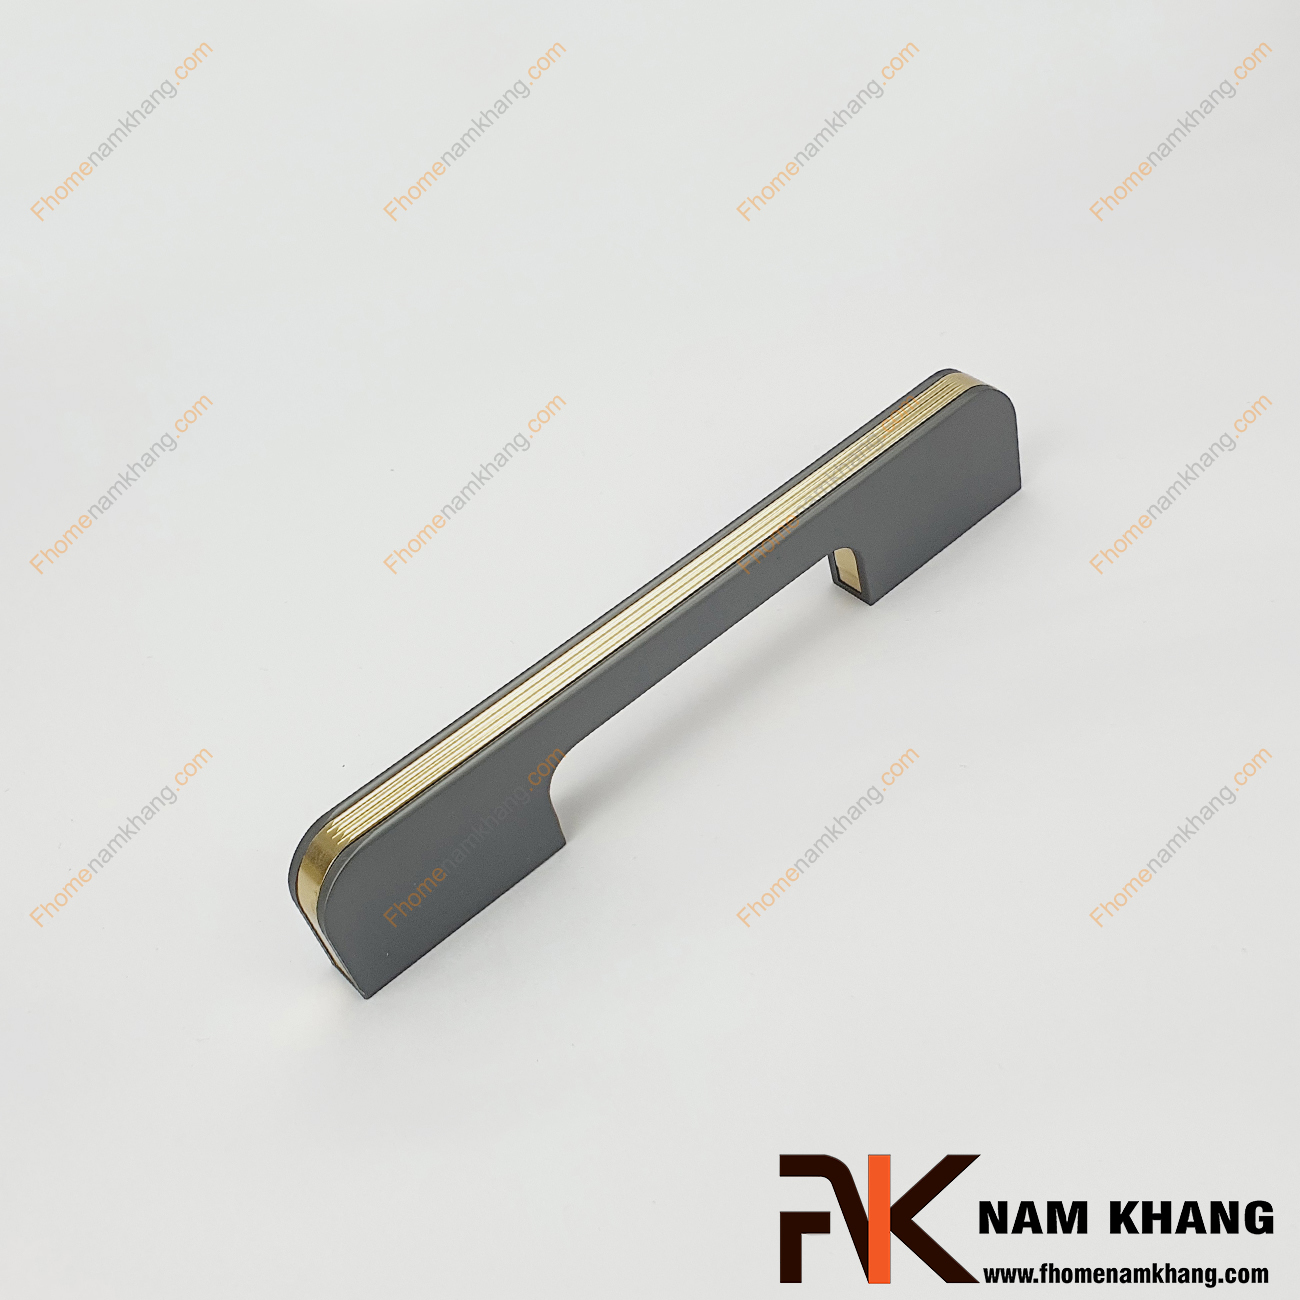 Tay nắm tủ phối hợp màu xám vàng NK398-XB - dòng tay nắm tủ đặc trưng cho thiết kế tay nắm tủ lắp ghép từ 2 phần riêng biệt.